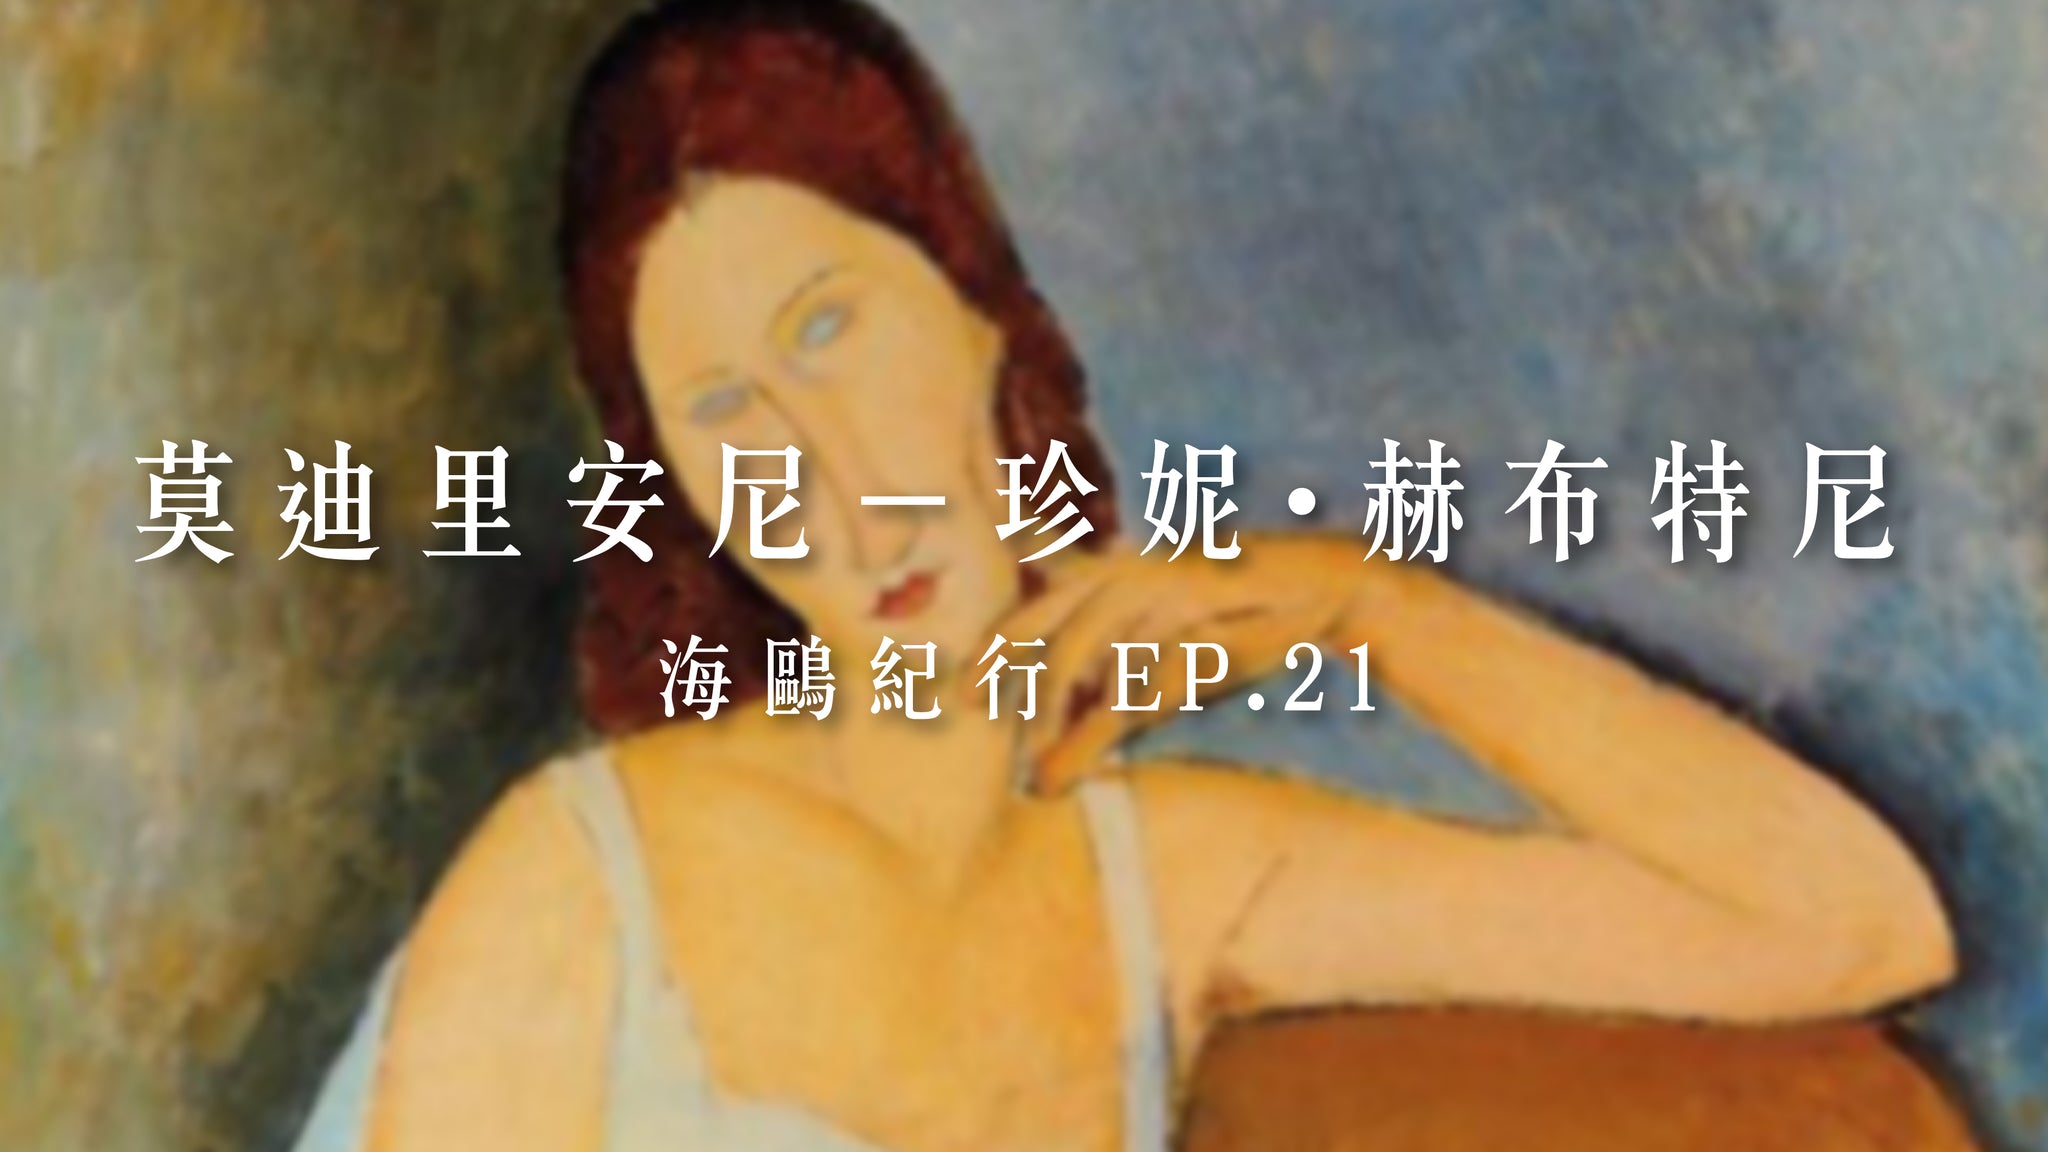 海鷗紀行 EP21 珍妮·赫布特尼 Jeanne Hebuterne,1918、1919-莫迪里安尼 Amedeo  Modigliani, 1884-1920